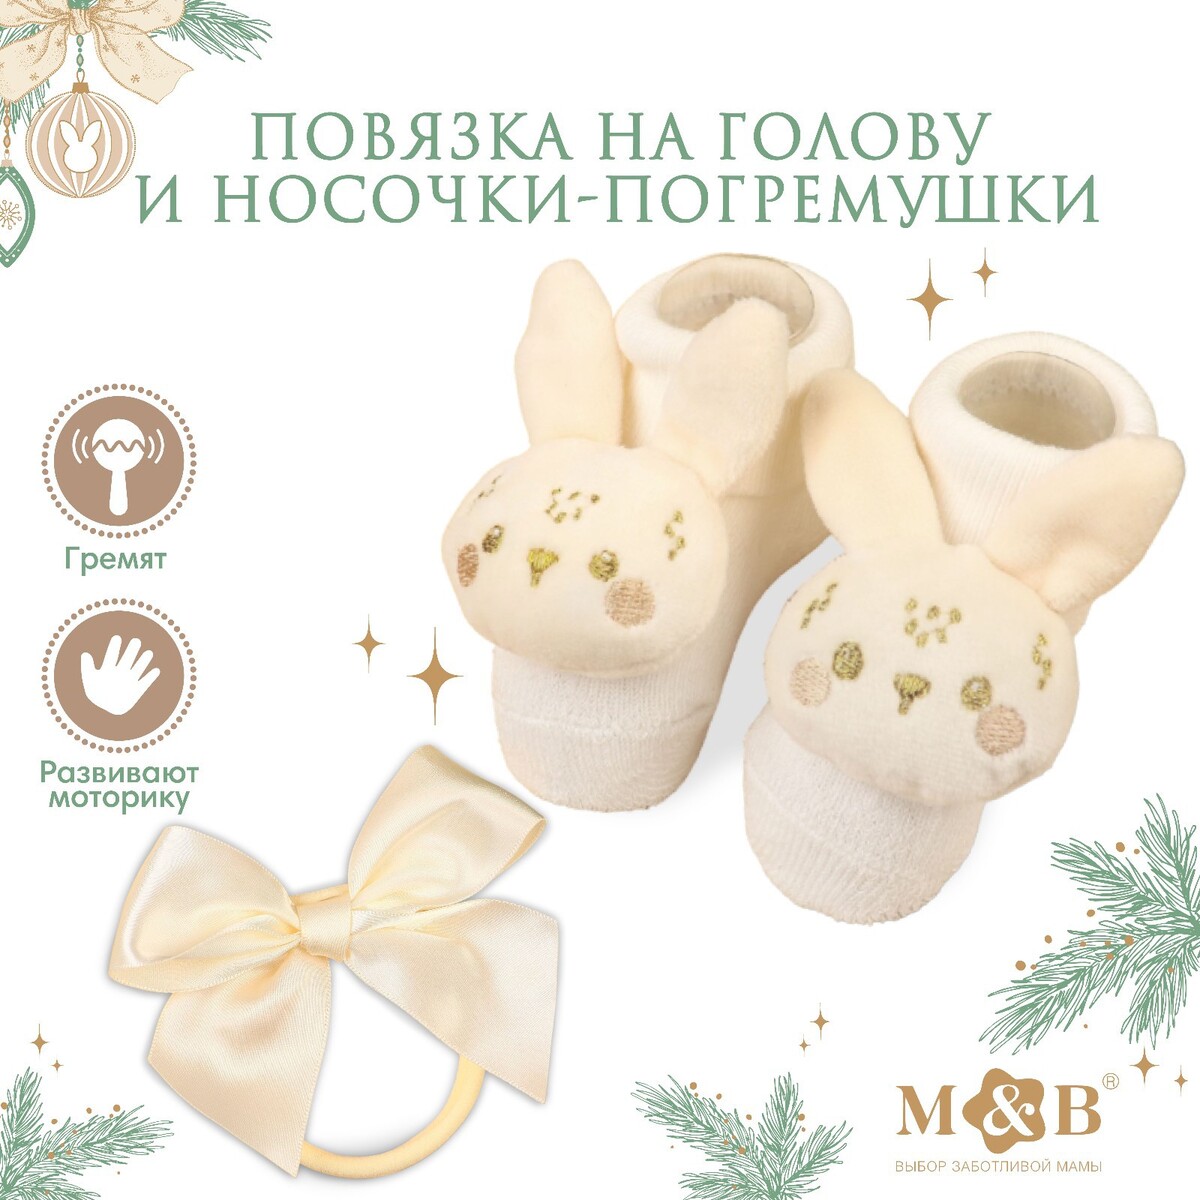 Подарочный набор новогодний: повязка на голову и носочки - погремушки на ножки